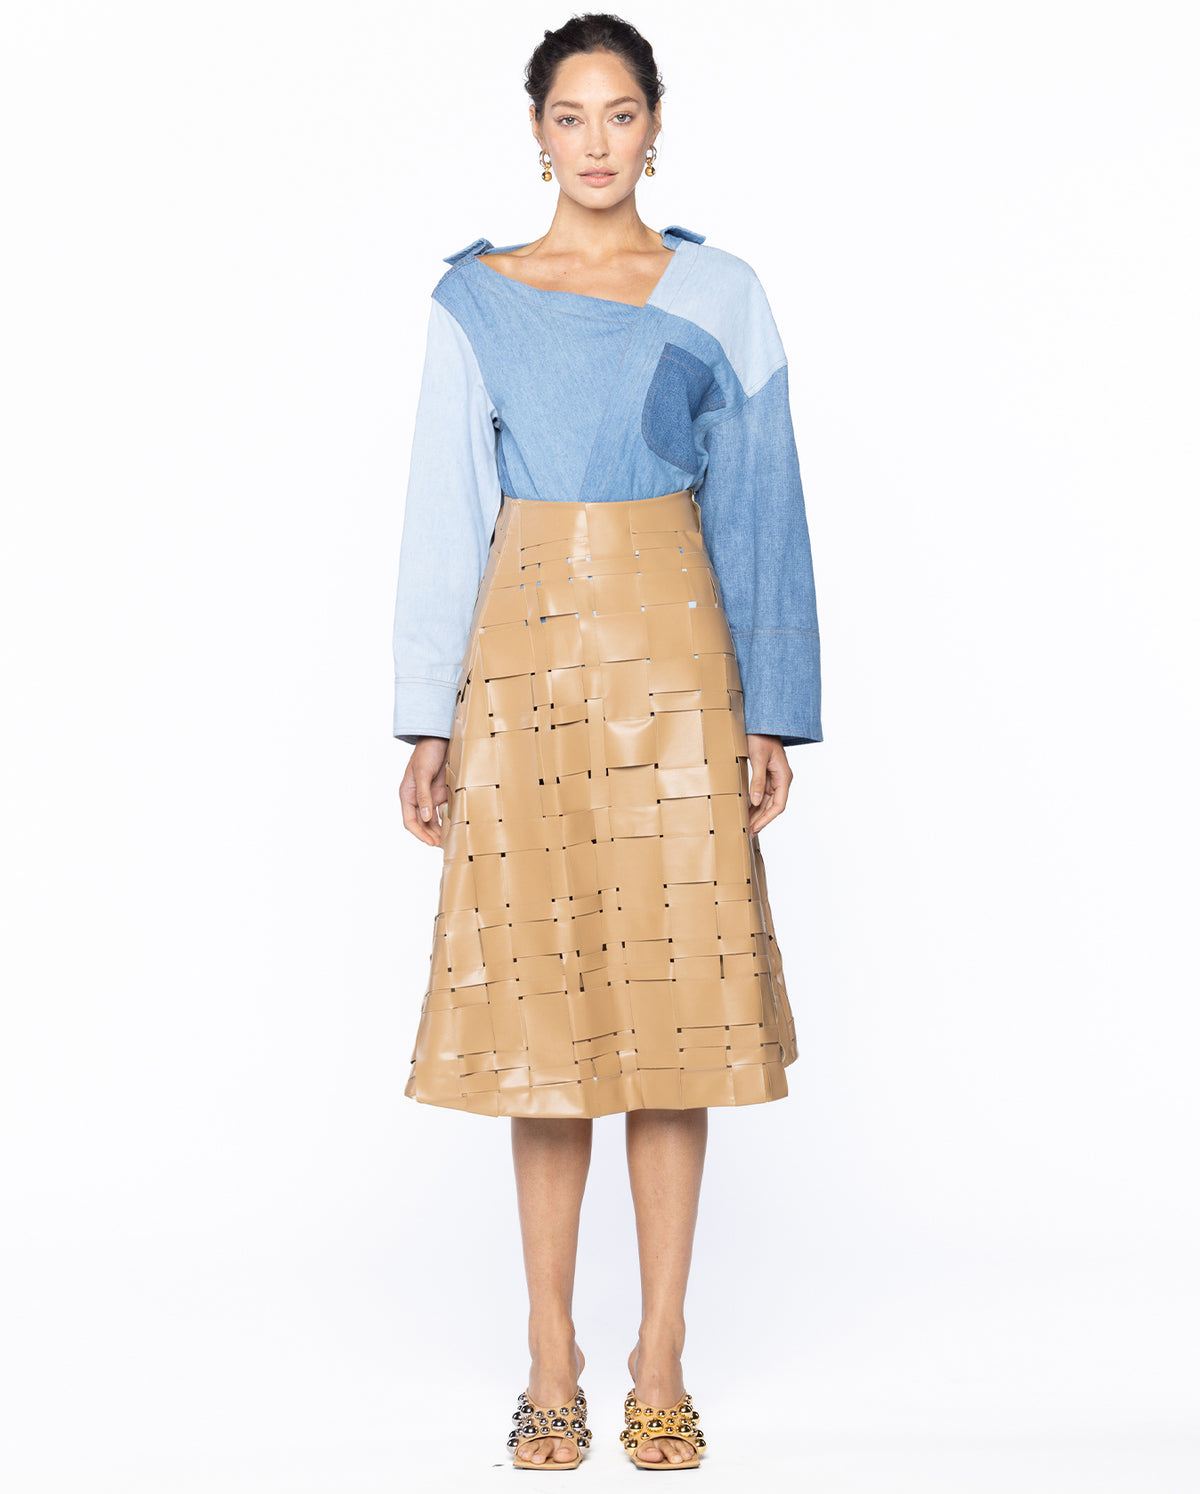 Weaved Eco Vegan Leather Skirt